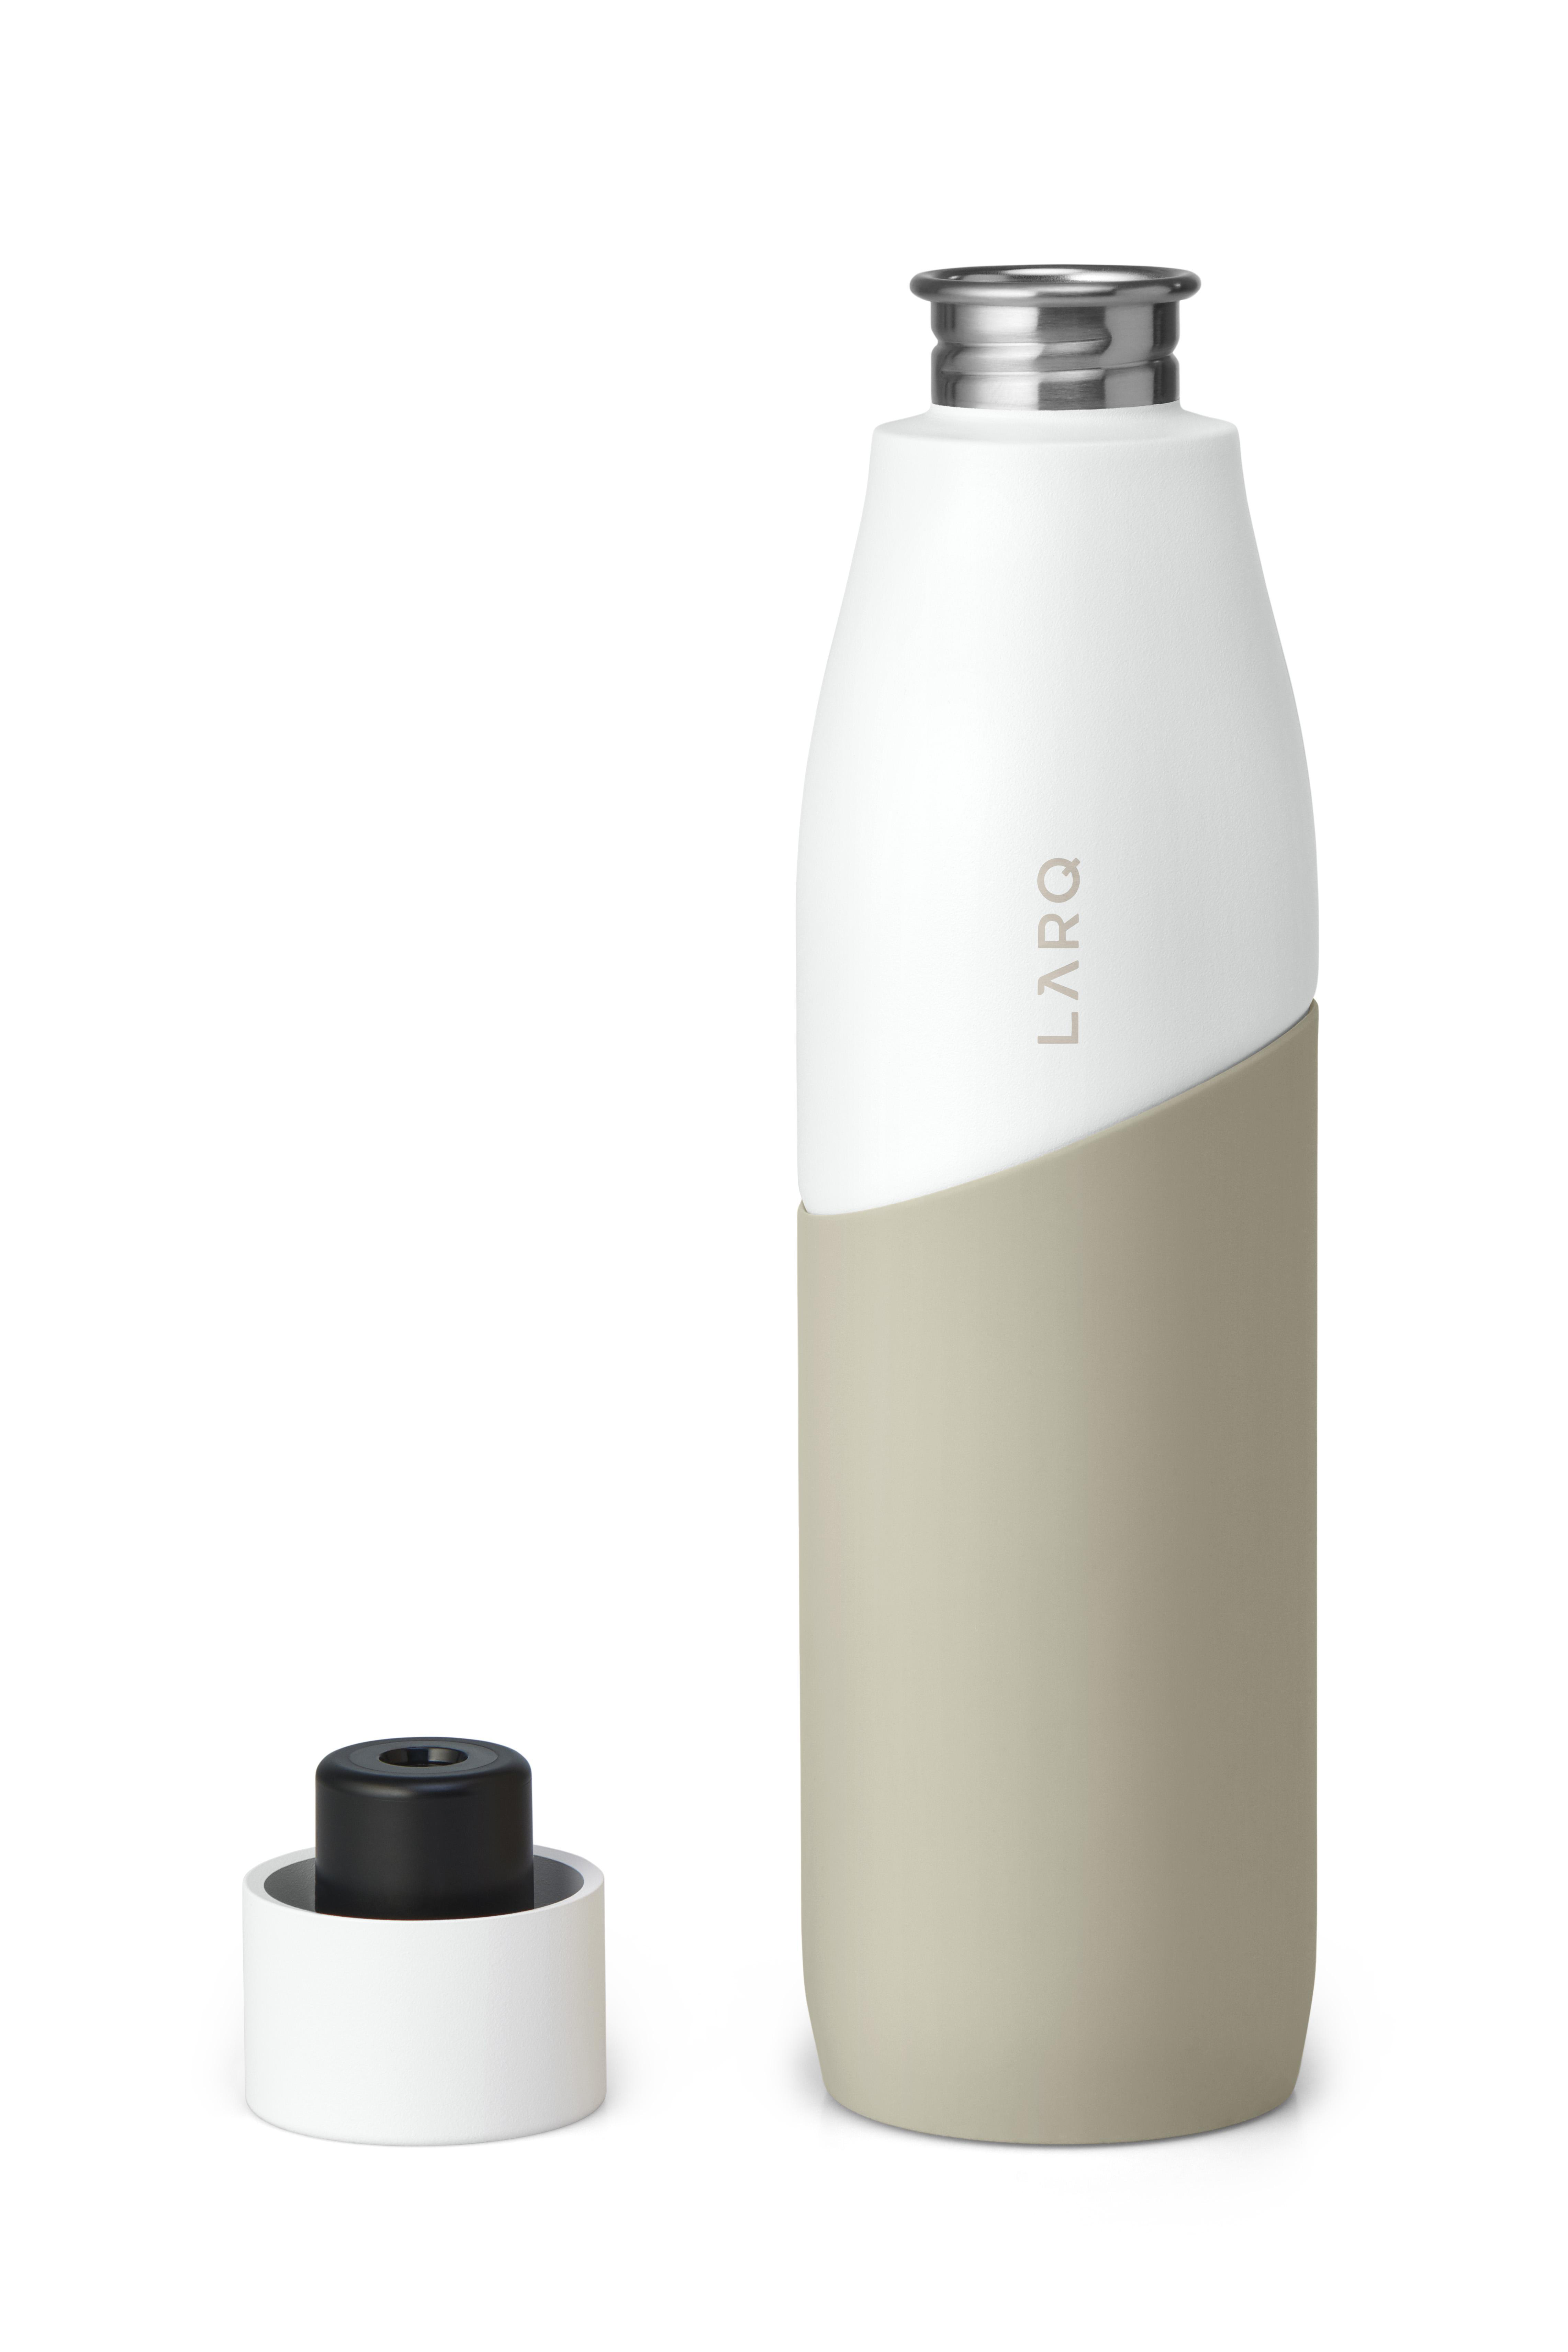 LARQ BSWD095A Movement Bottle Terra white/Dune Trinkflasche edition